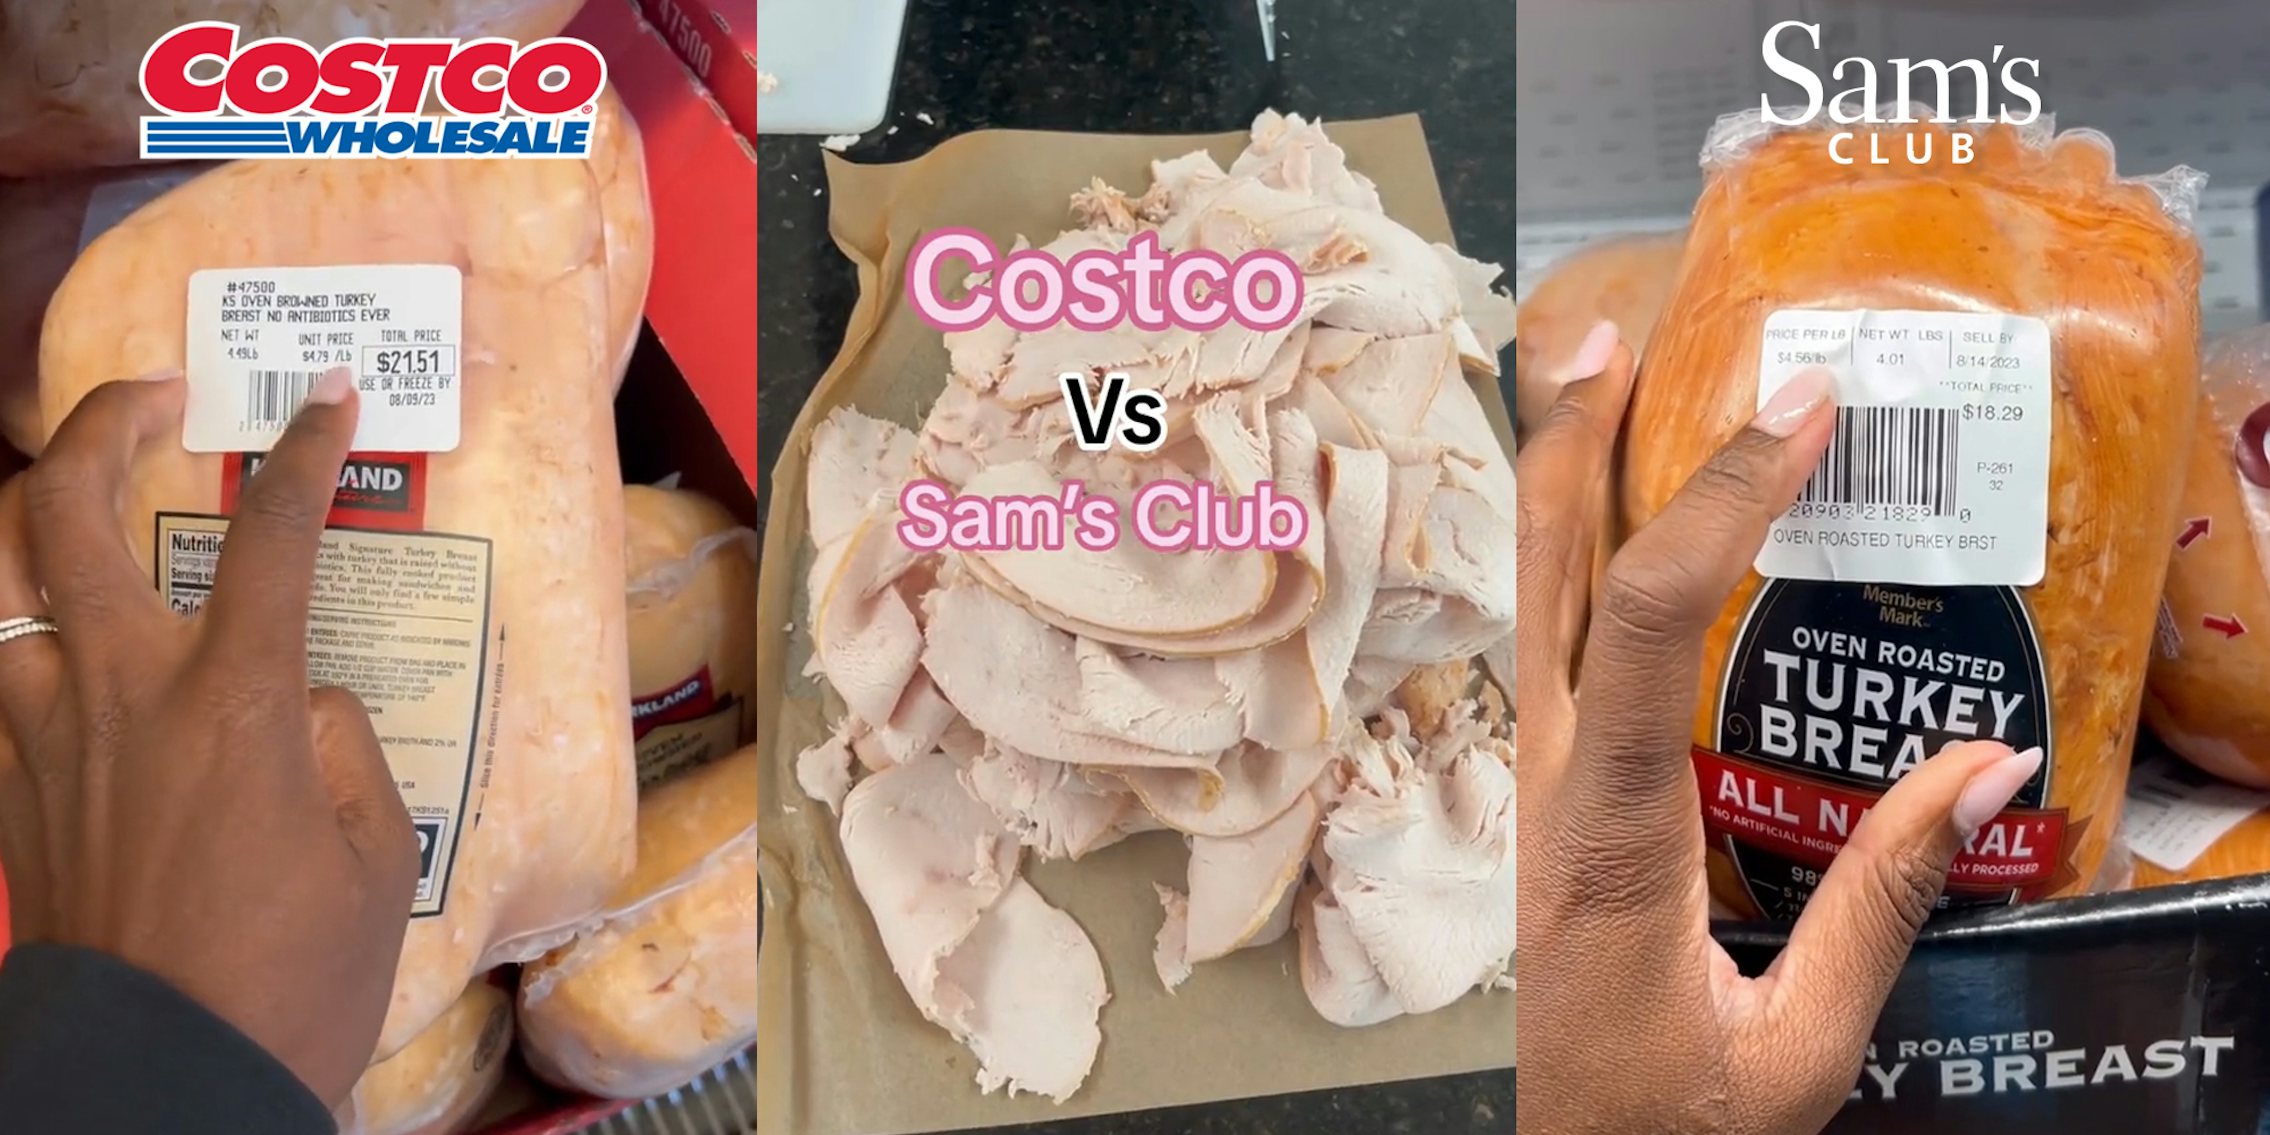 Costco vs. Sam's Club: Which Is Cheaper?